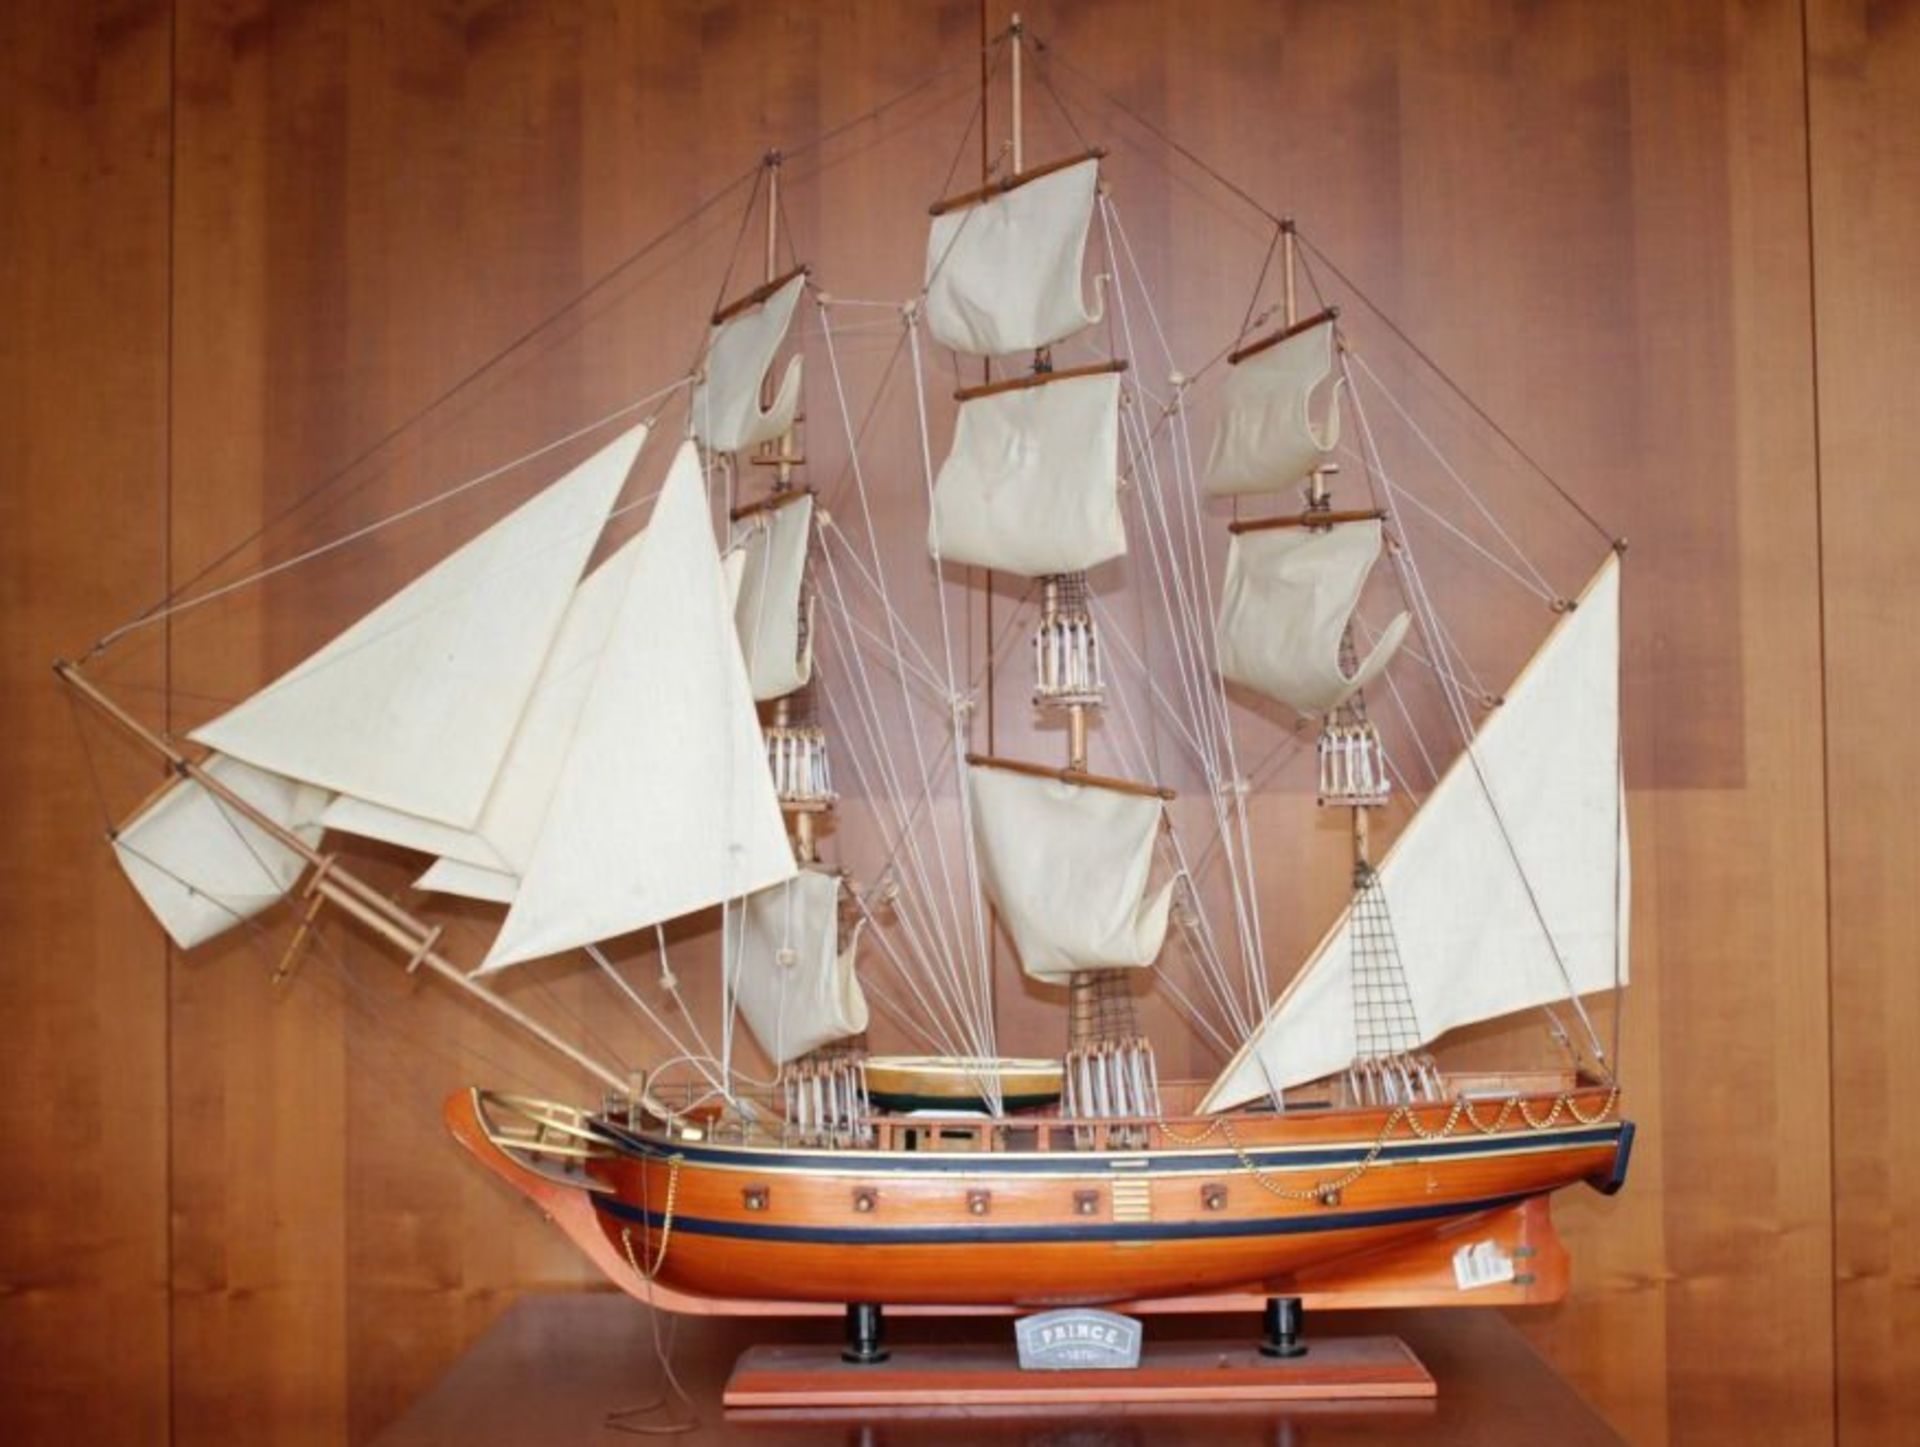 Schiffsmodell "Prince 1670" auf Stand, Holz, H-95cm L-110cm B-20vm. KEIN VERSAND MÖGLICH